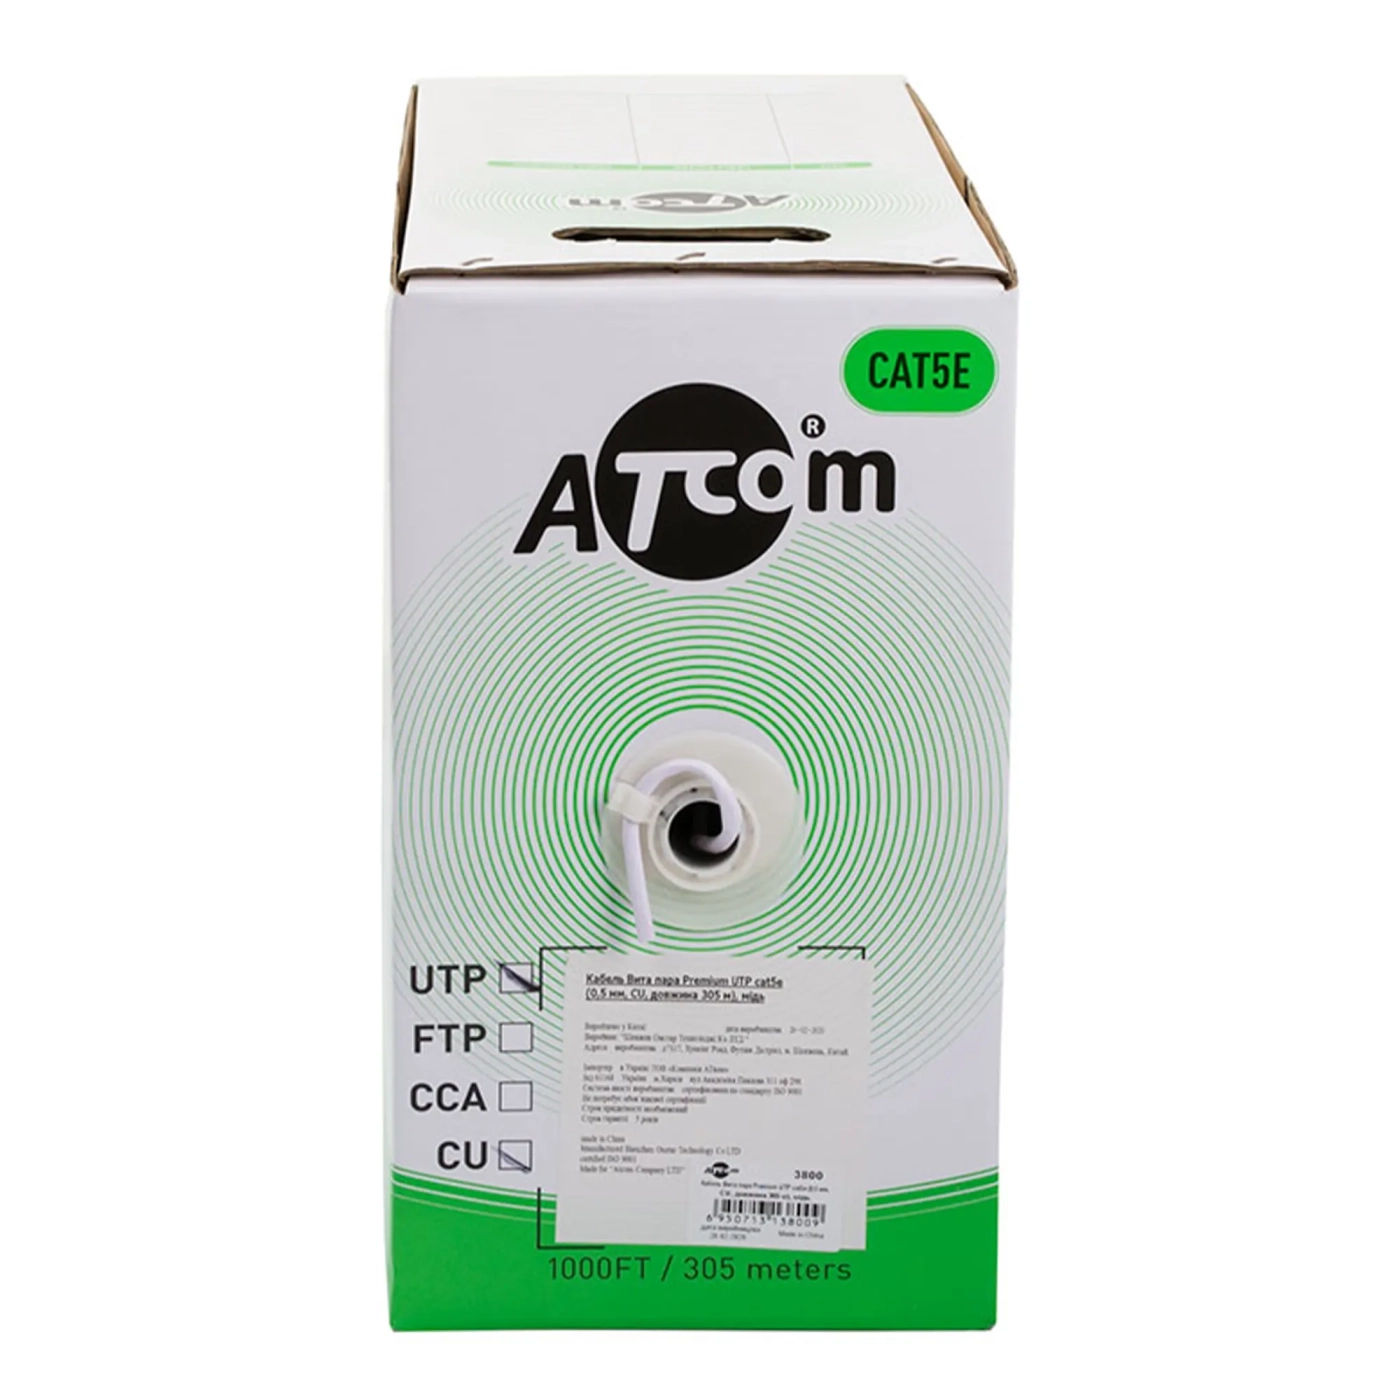 Купить Кабель ATcom Standard UTP cat5e (0,5 мм, CCA, 305 м) (3799) - фото 2